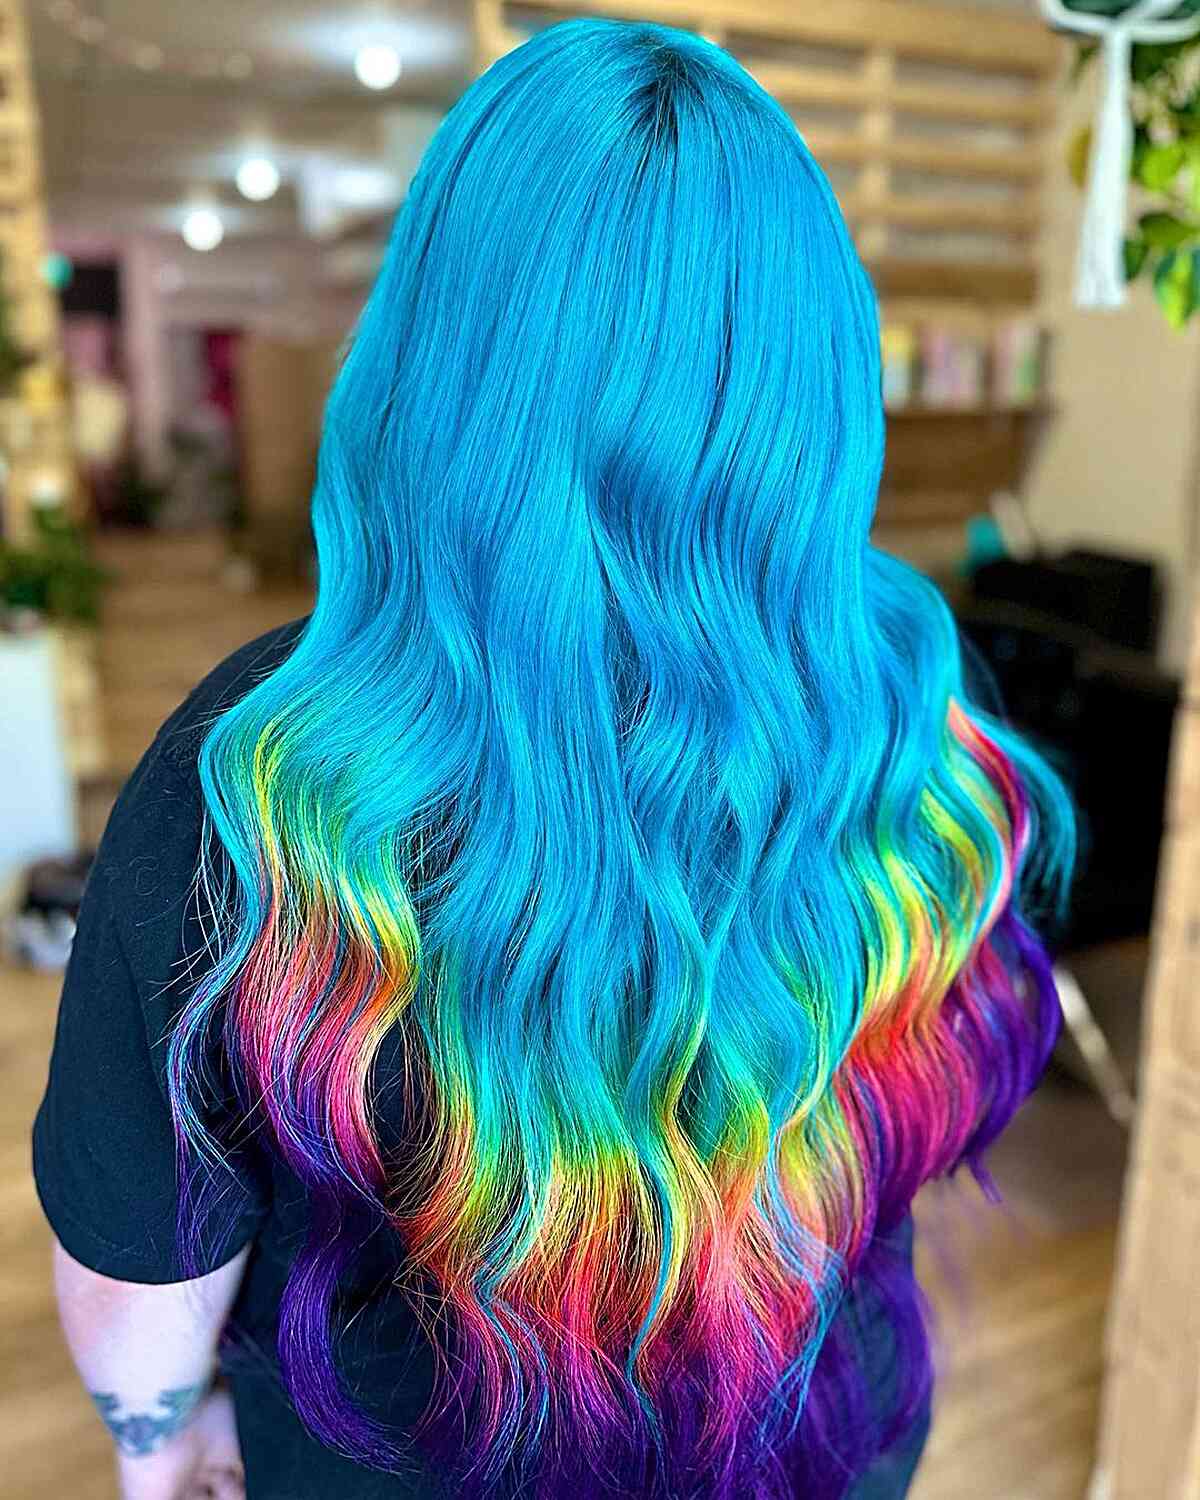 Long Blue Hair with Rainbow Tips Hair Color Idea